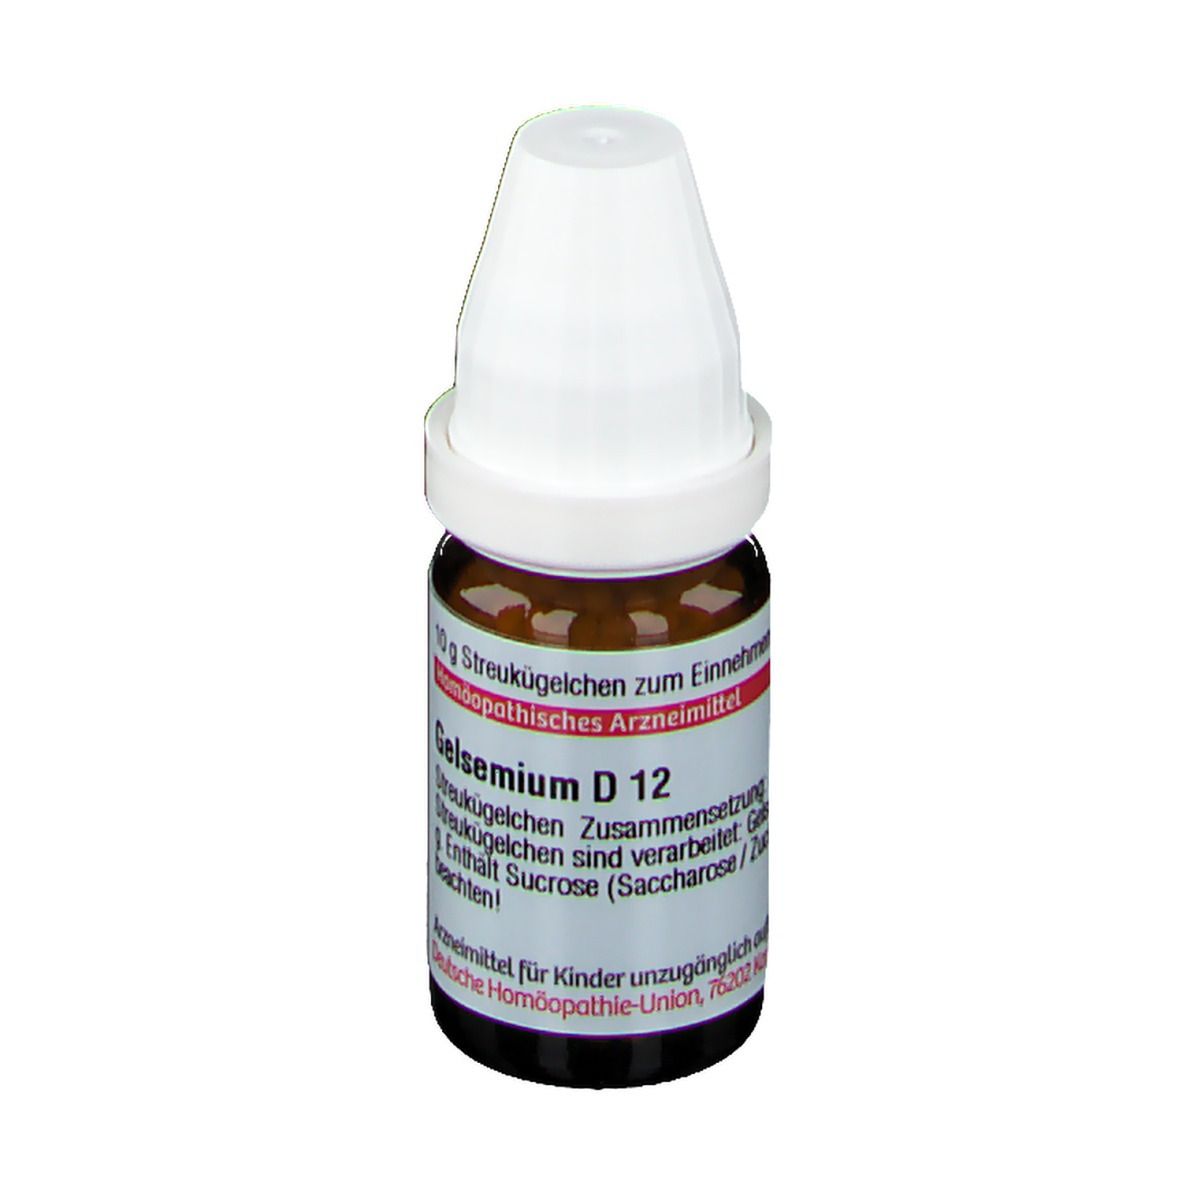 DHU Gelsemium D12